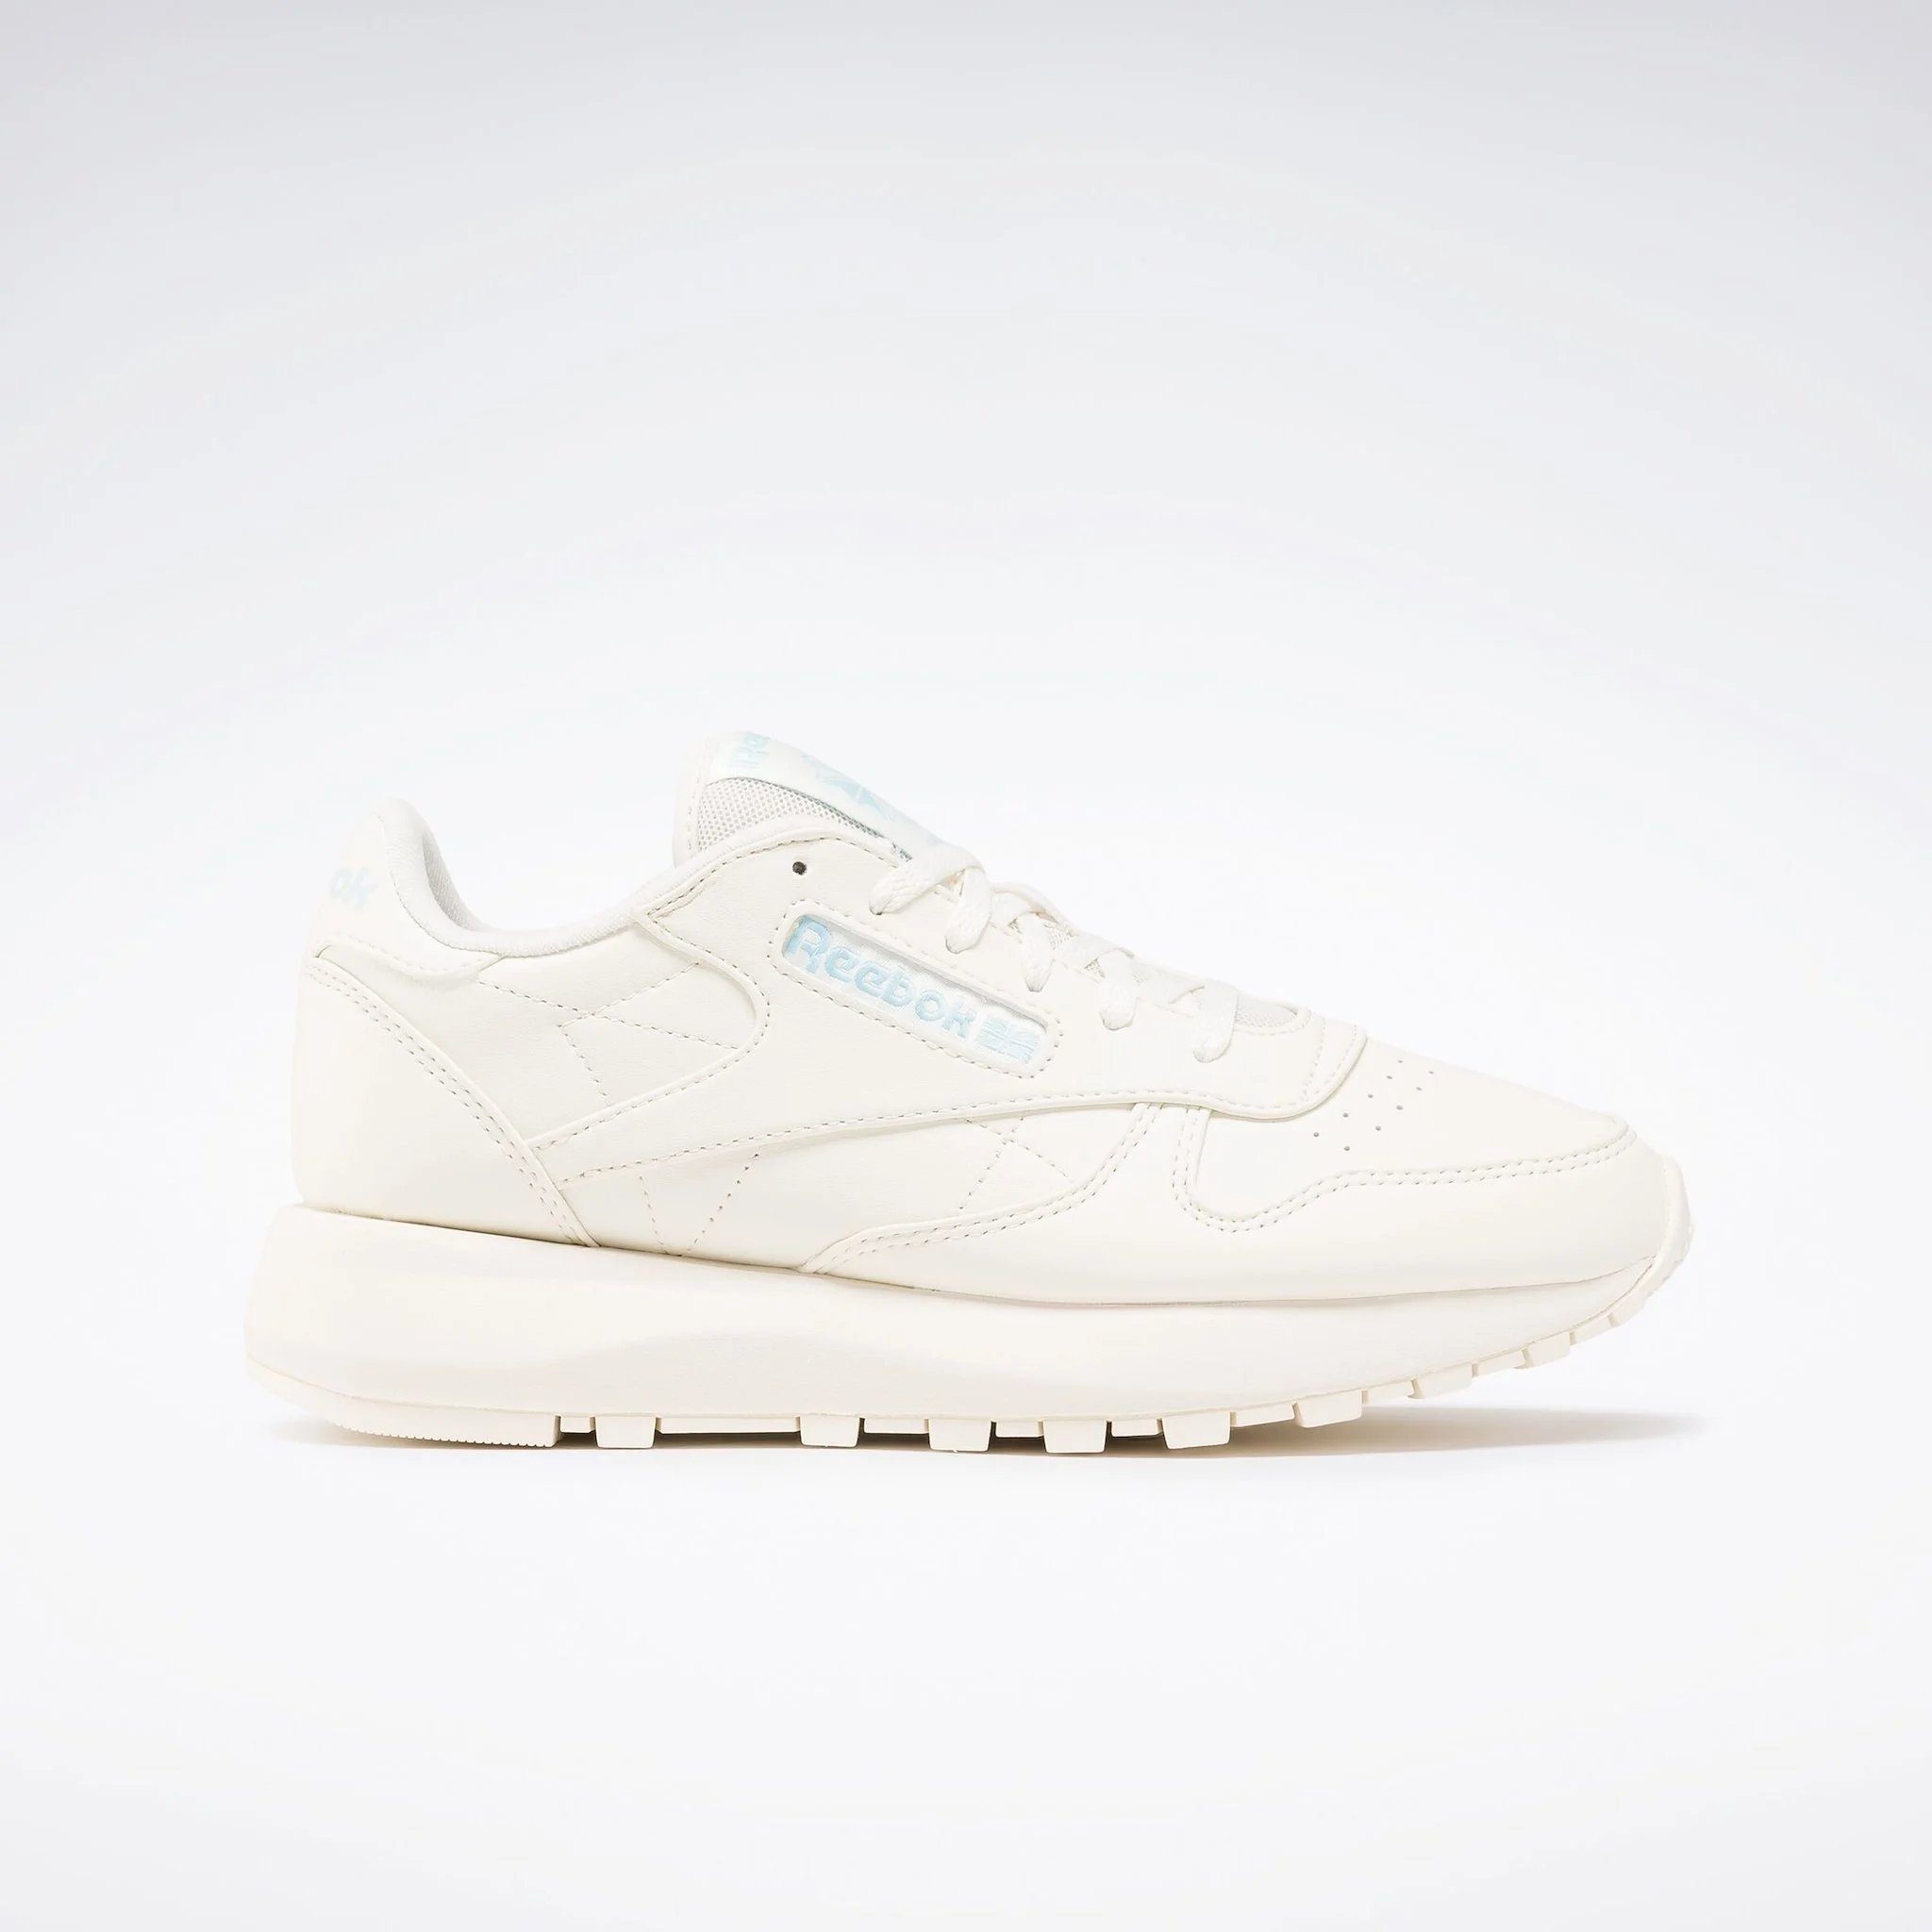 Rebook Classic SP Classic weiß-blau Reebok Sneaker Vegan